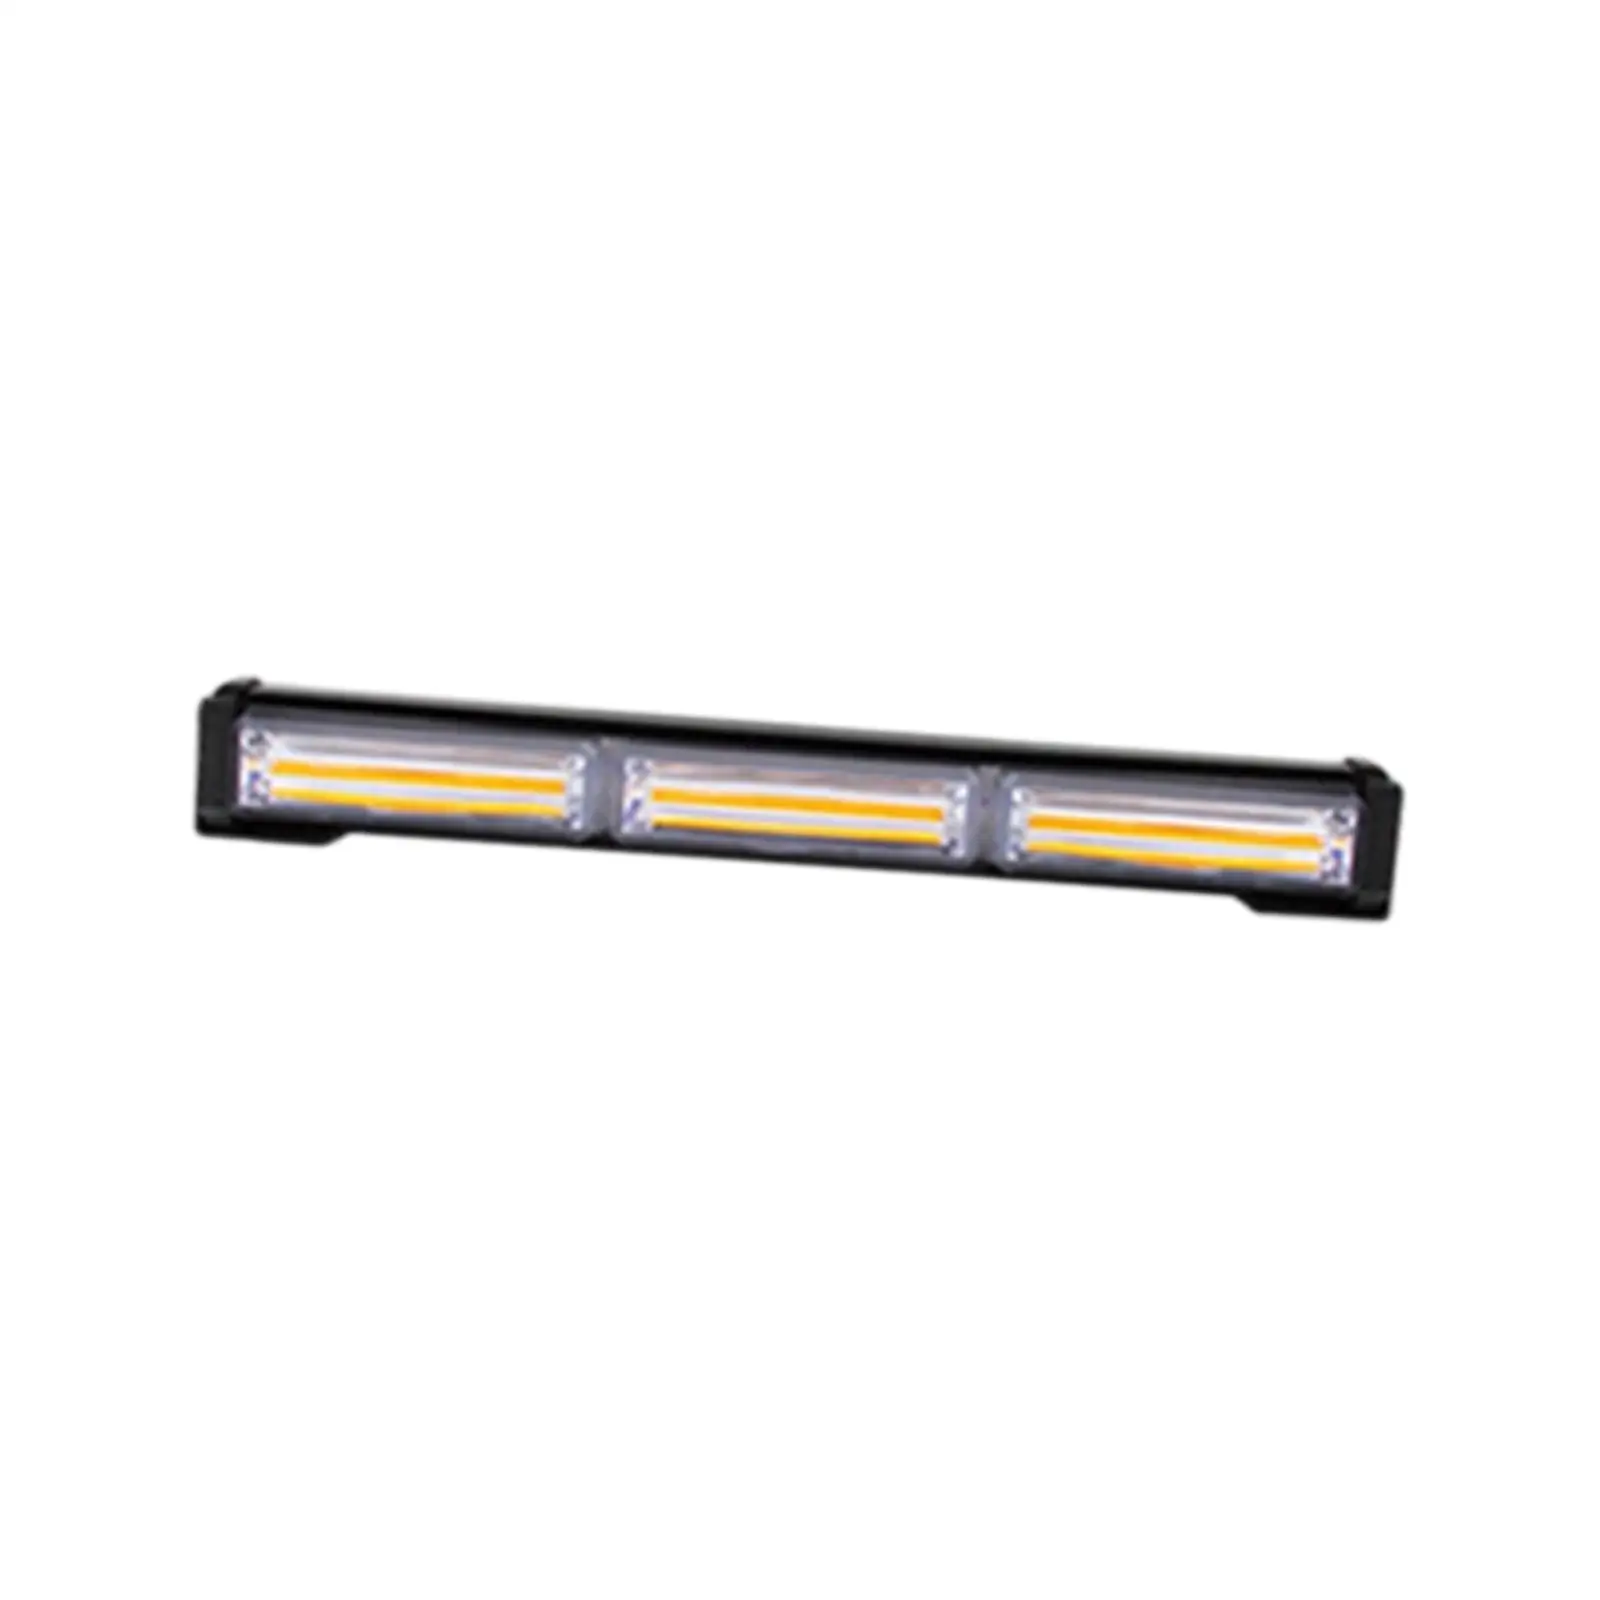 Car Strobe Warning Light Bar Generic for Truck Car Trailer Roof 12V 24V